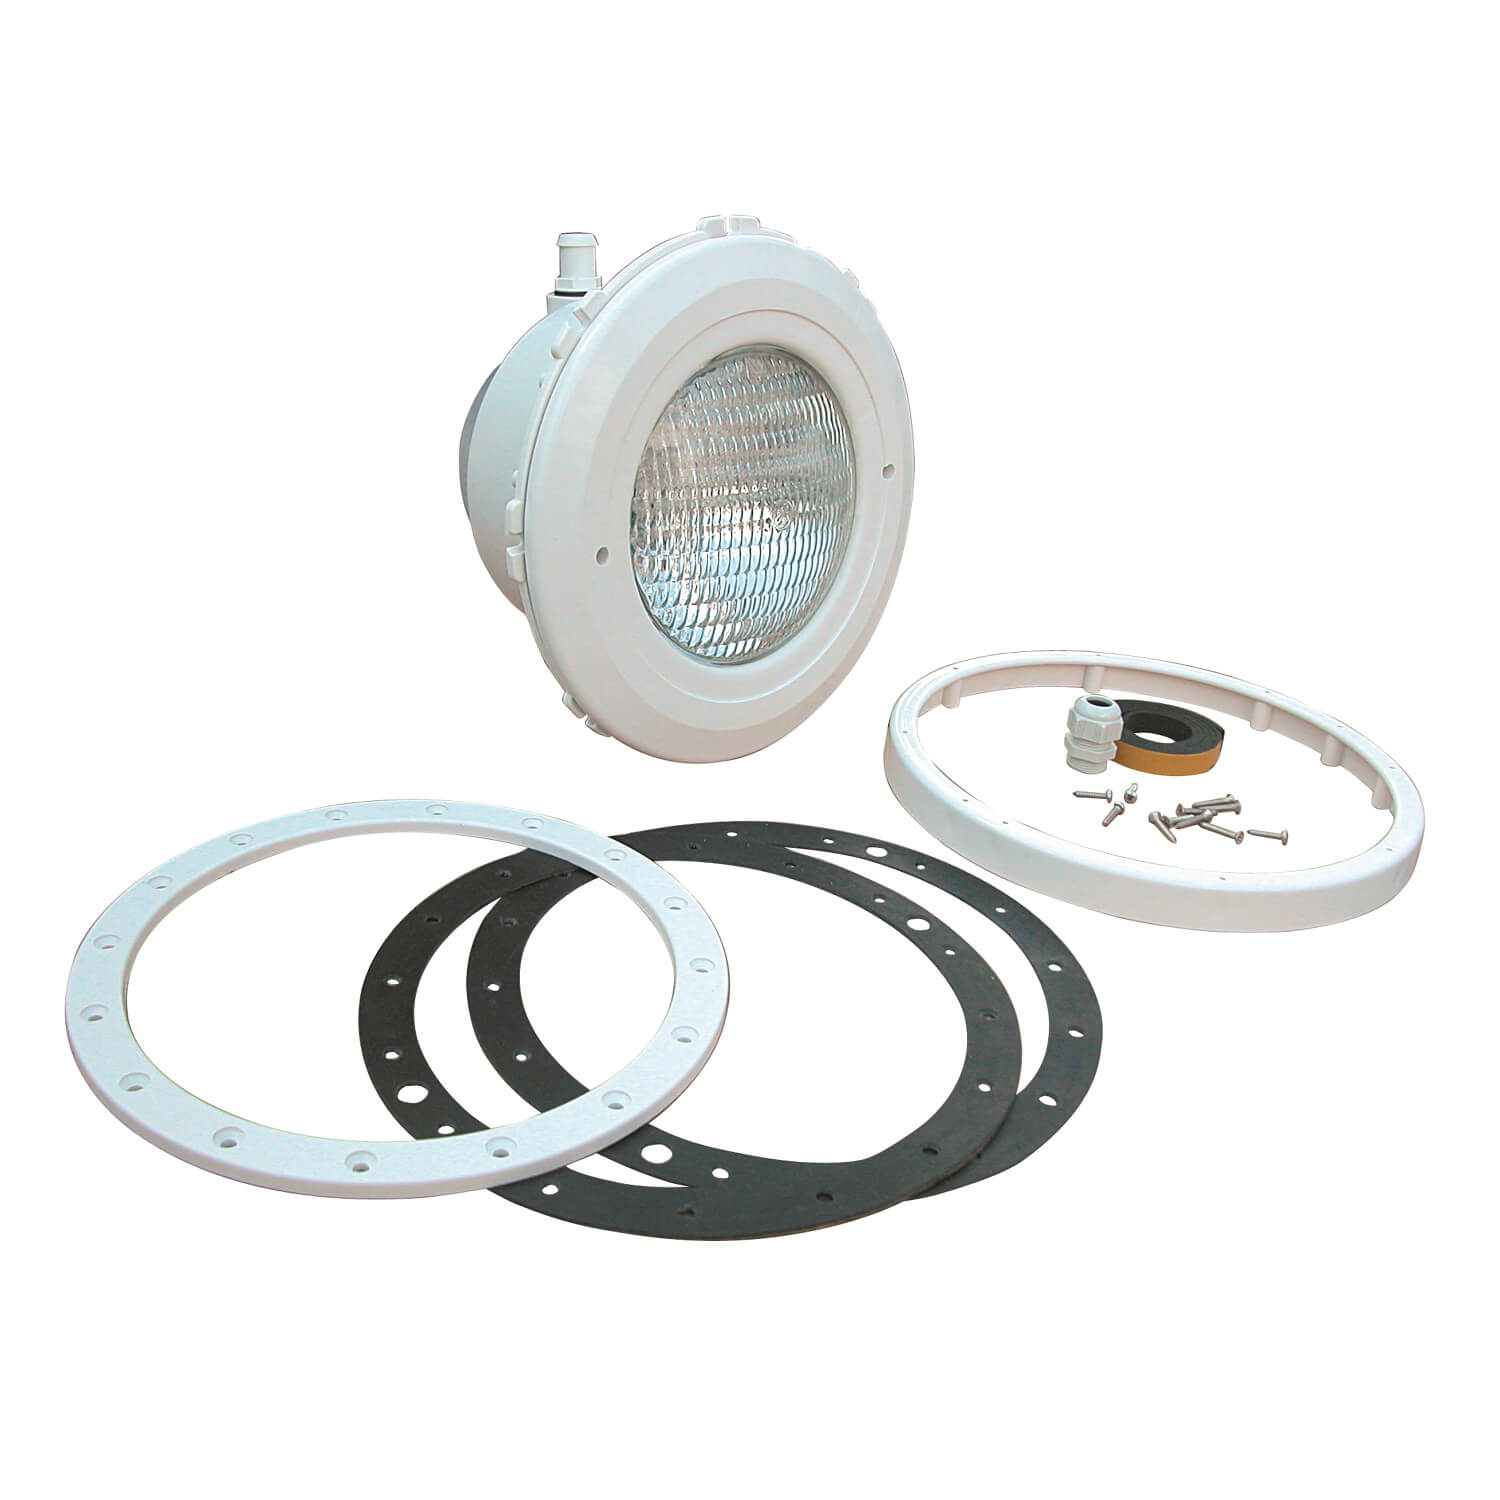 OKU LED Unterwasserscheinwerfer für Folienbecken 20 Watt Lichtfarbe weiß